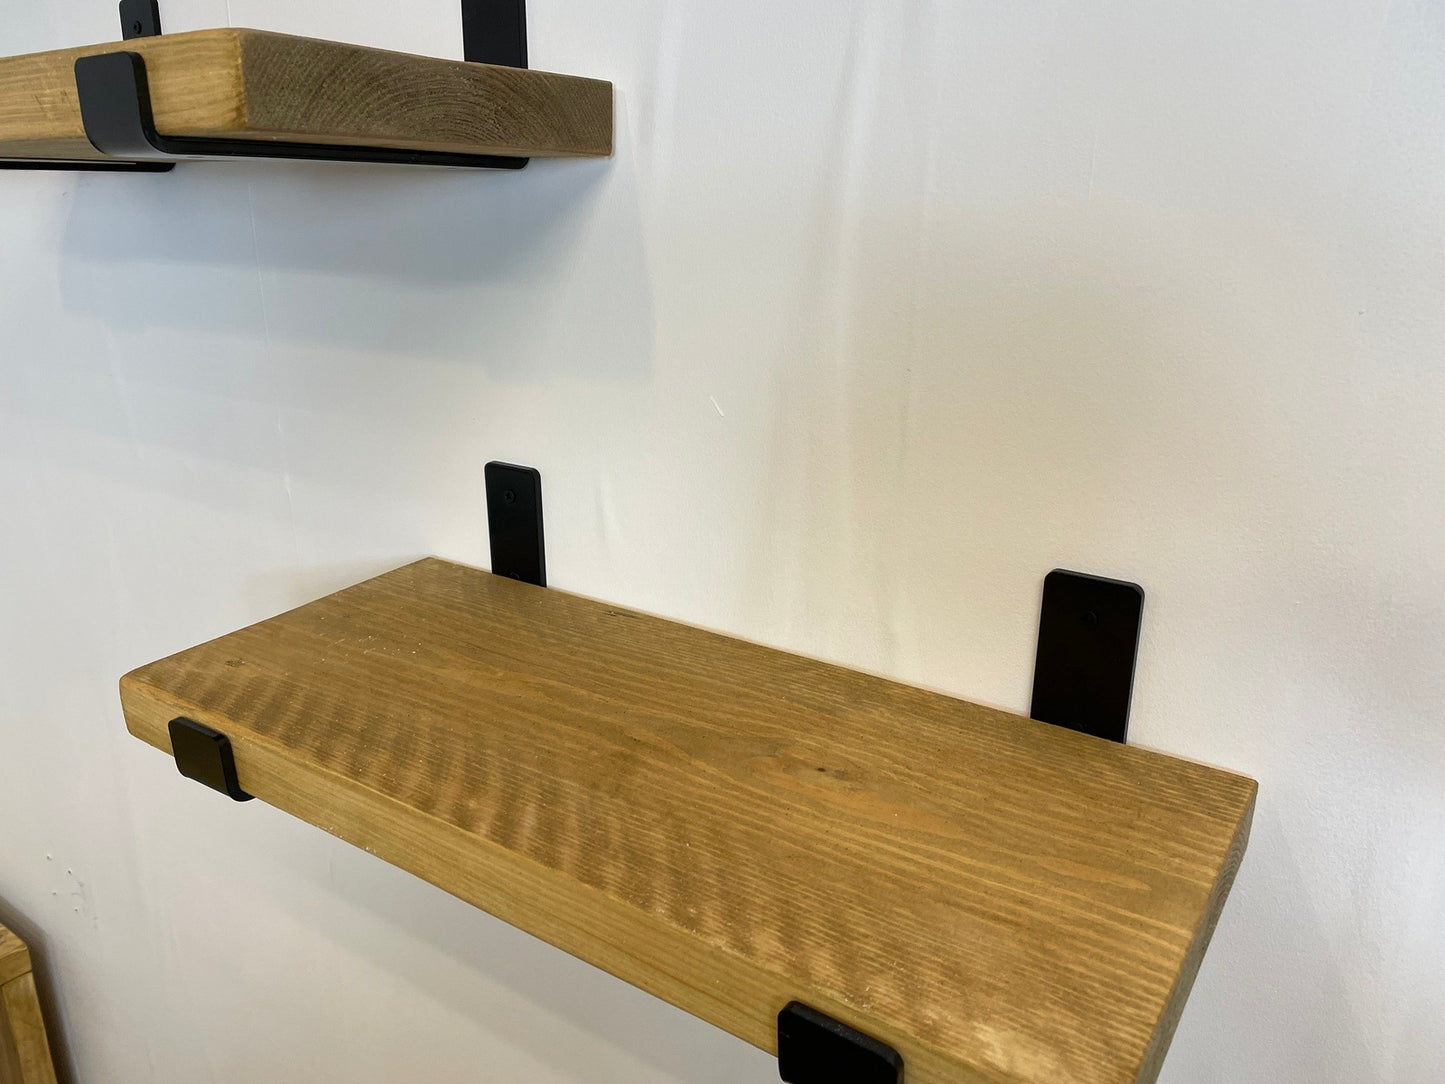 Rustic Wood Shelves with Black Metal Industrial Brackets - 21cm Deep